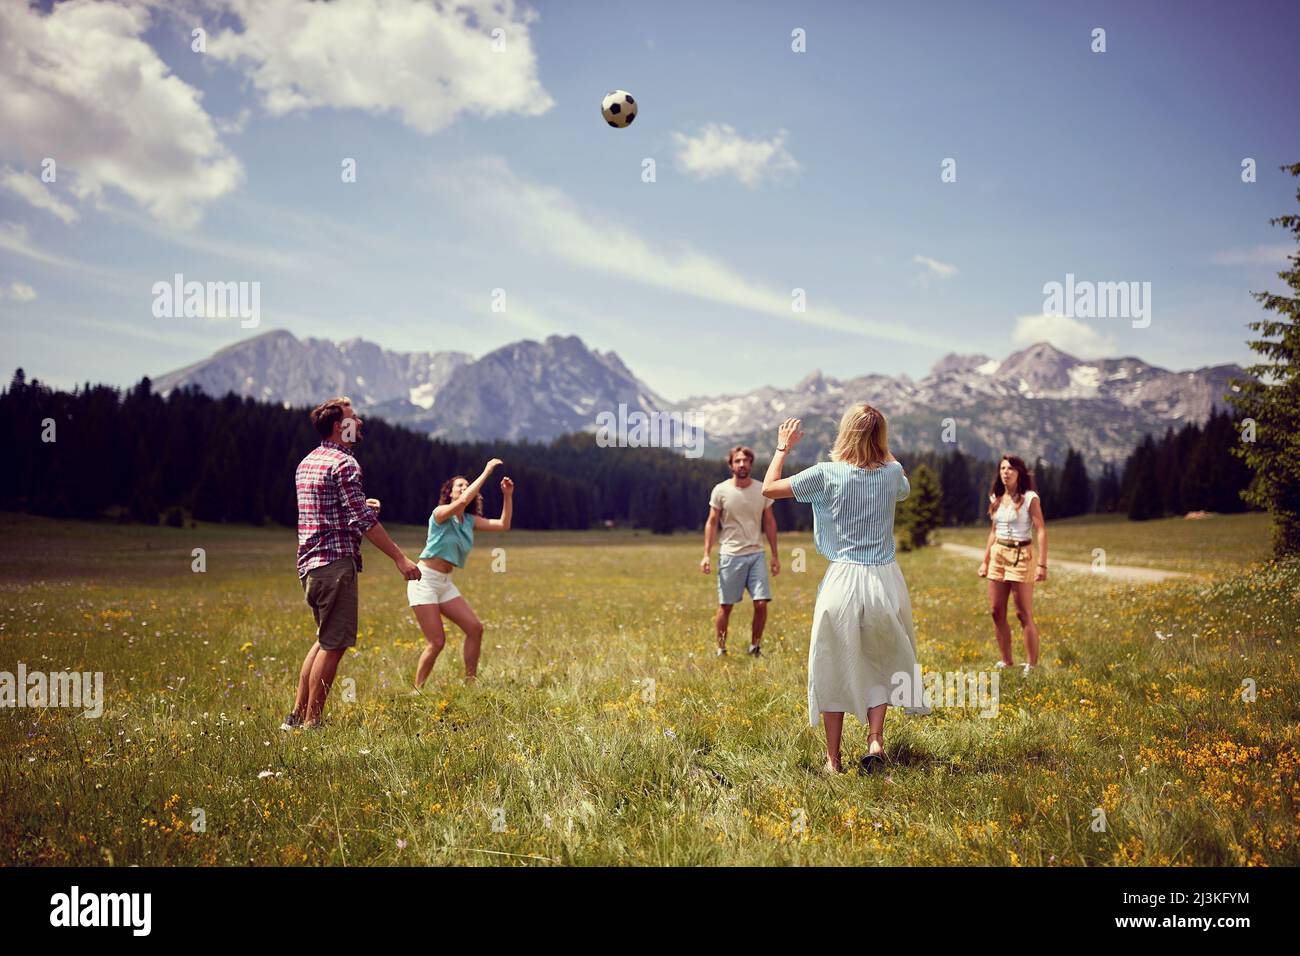 Gruppo di amici che si divertono a giocare con la palla sul prato verde. Godendo il tempo insieme nella natura. Divertimento, convivenza, stile di vita, concetto di natura. Foto Stock